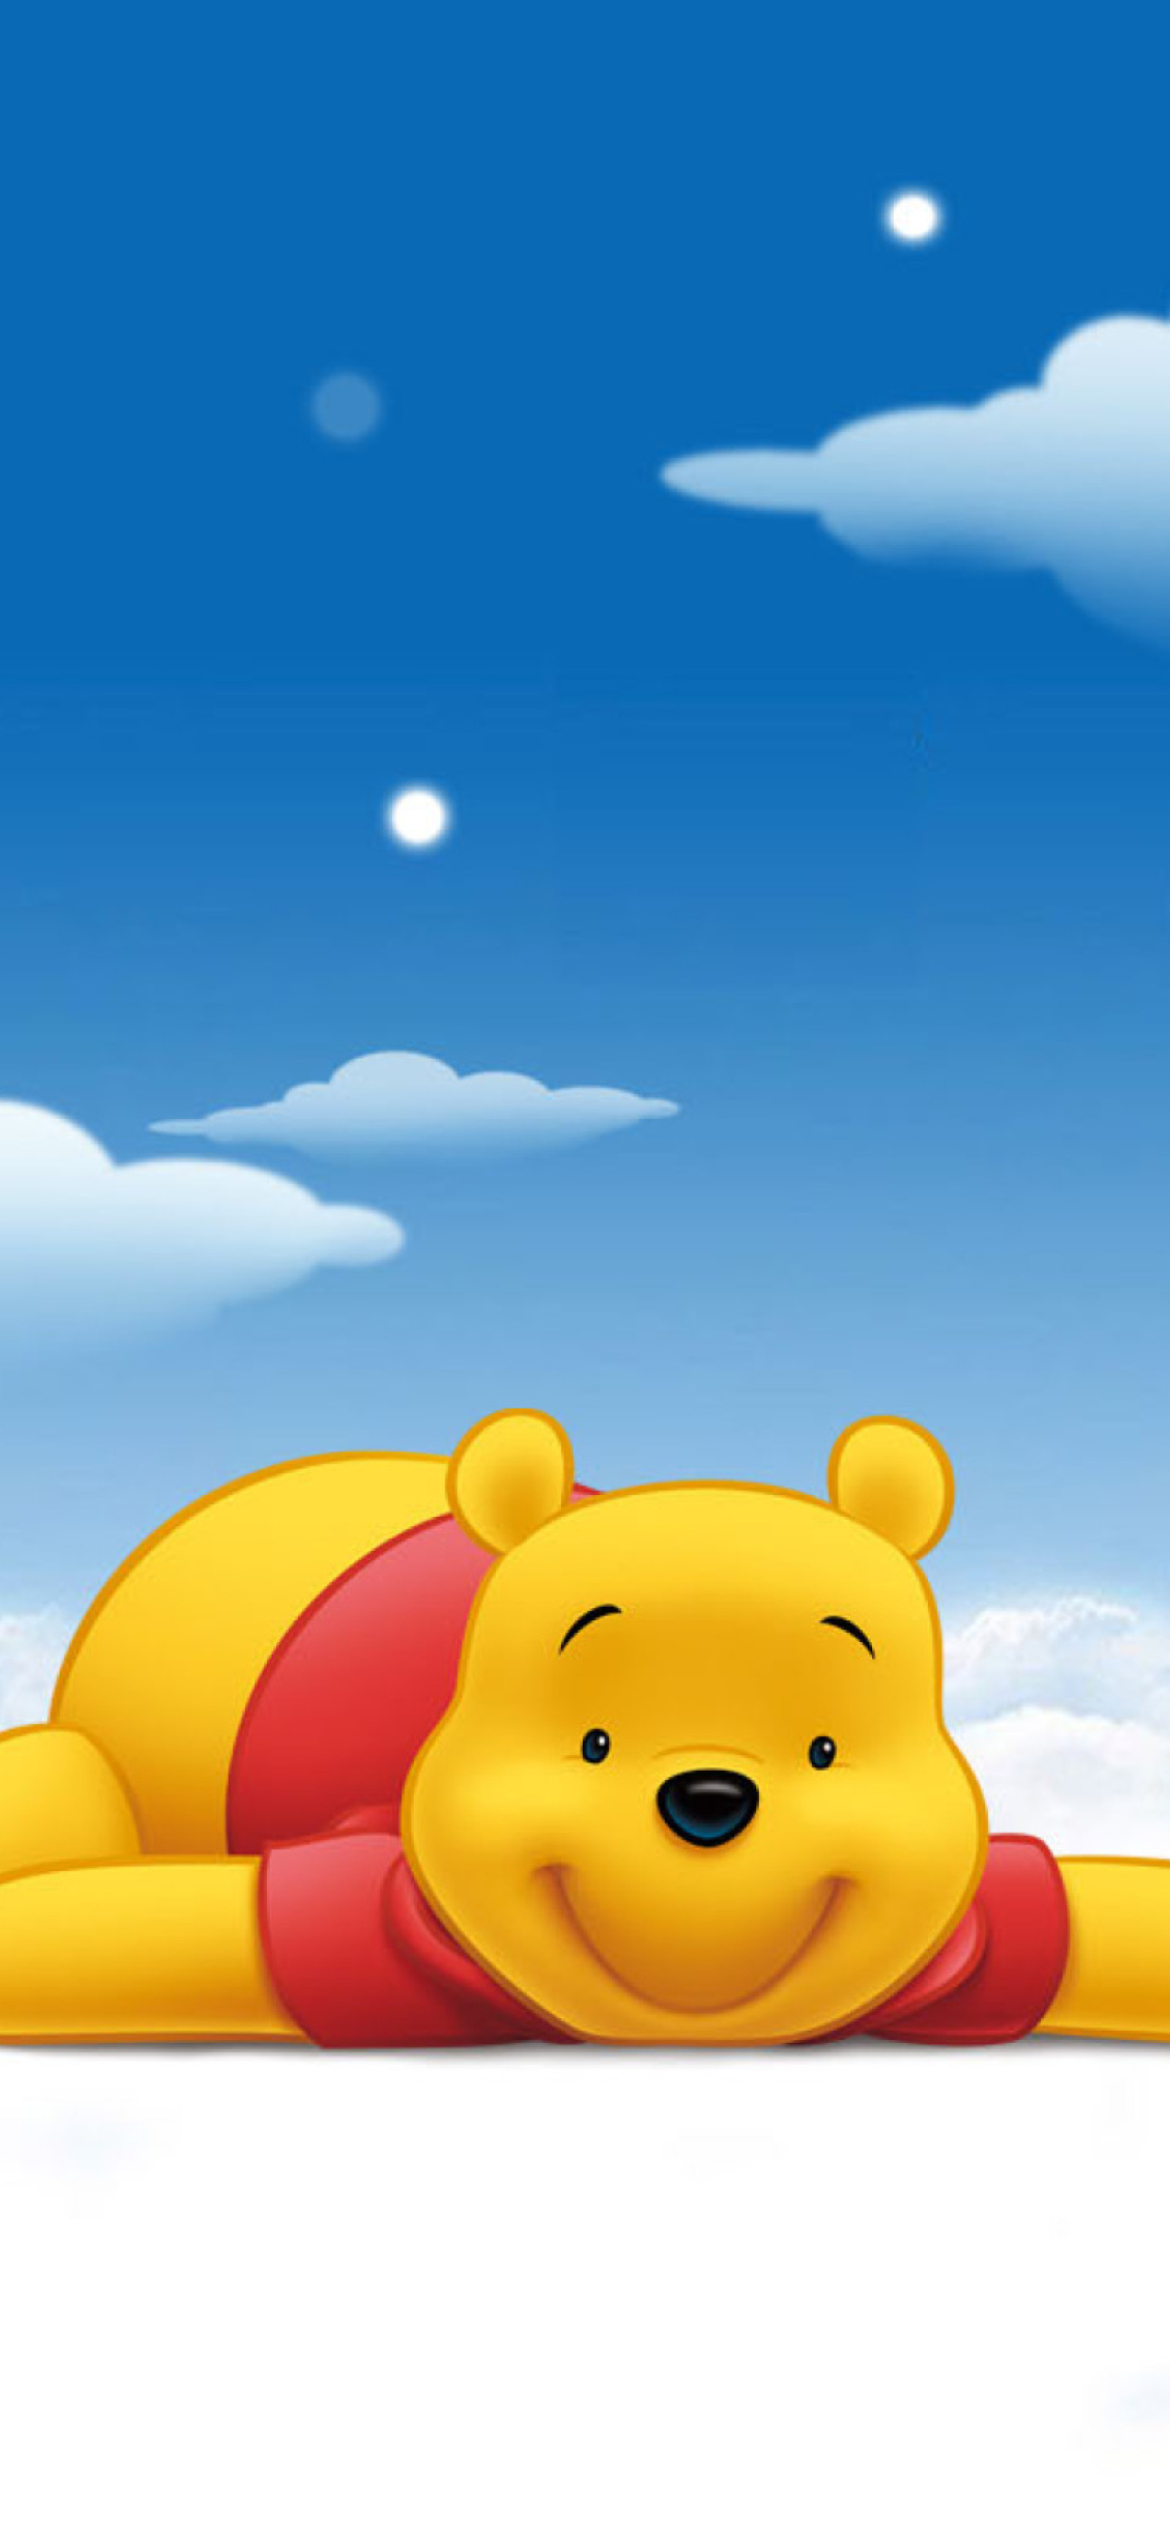 Kartinka Winnie The Pooh Dlya Telefona I Na Rabochij Stol Iphone 12 Pro